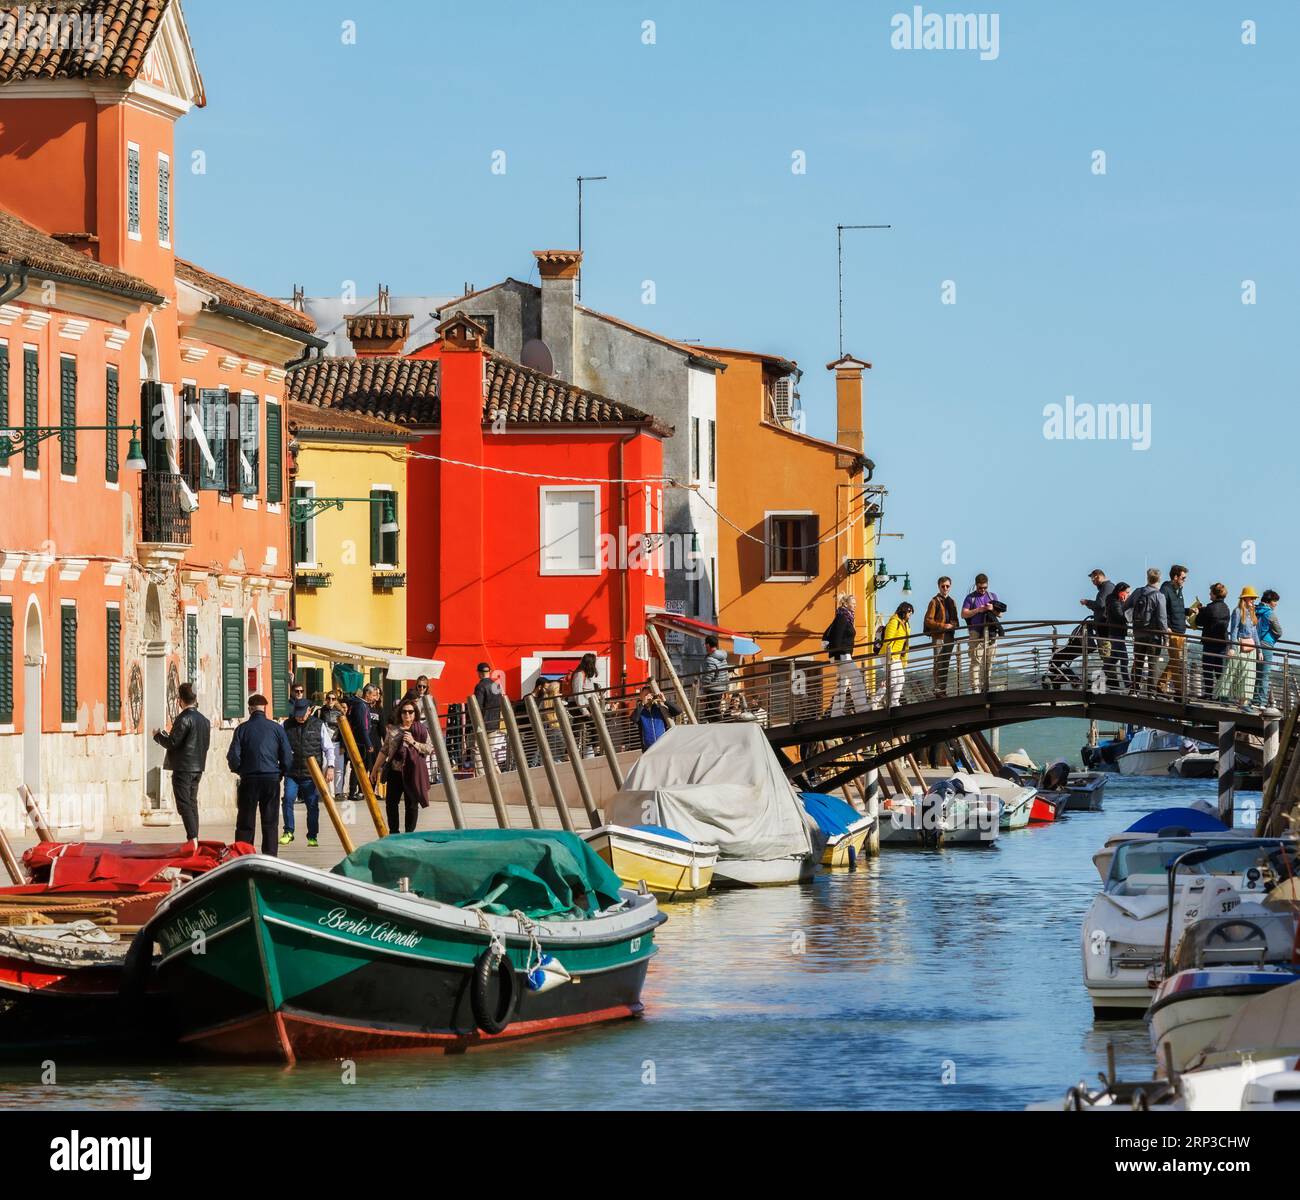 Isola di Burano nella laguna veneta, comune di Venezia, Italia. Case colorate e canale. Foto Stock